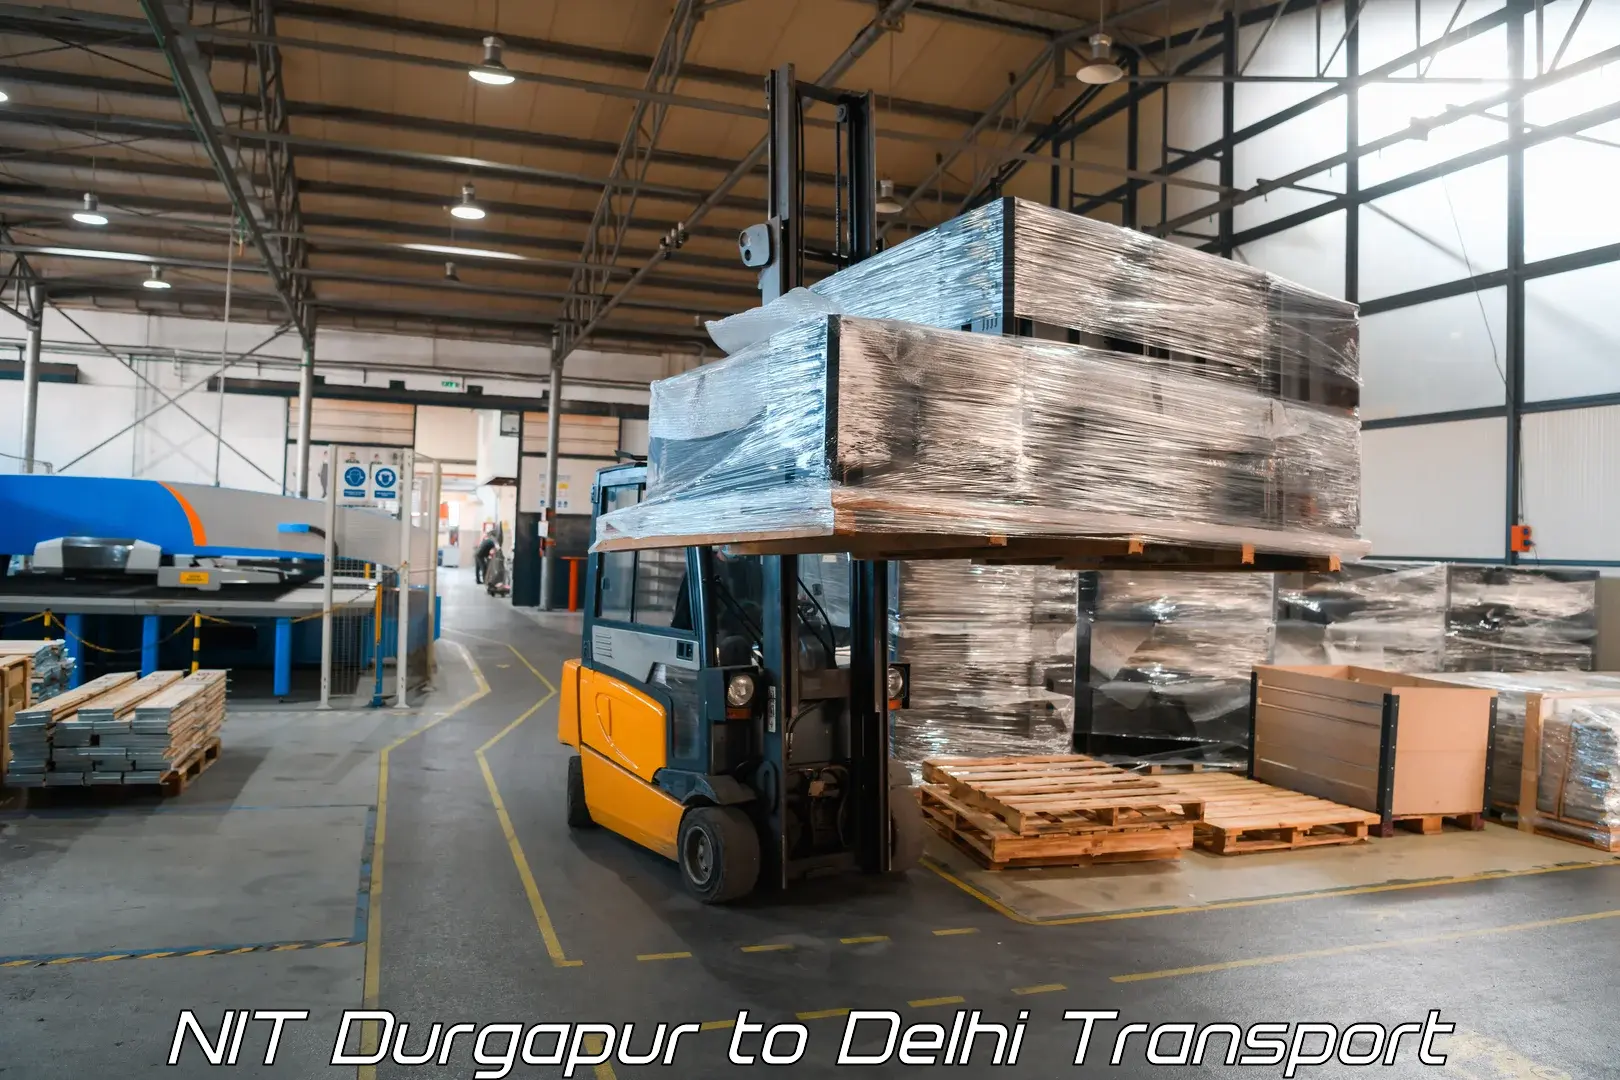 Vehicle courier services NIT Durgapur to Ashok Vihar